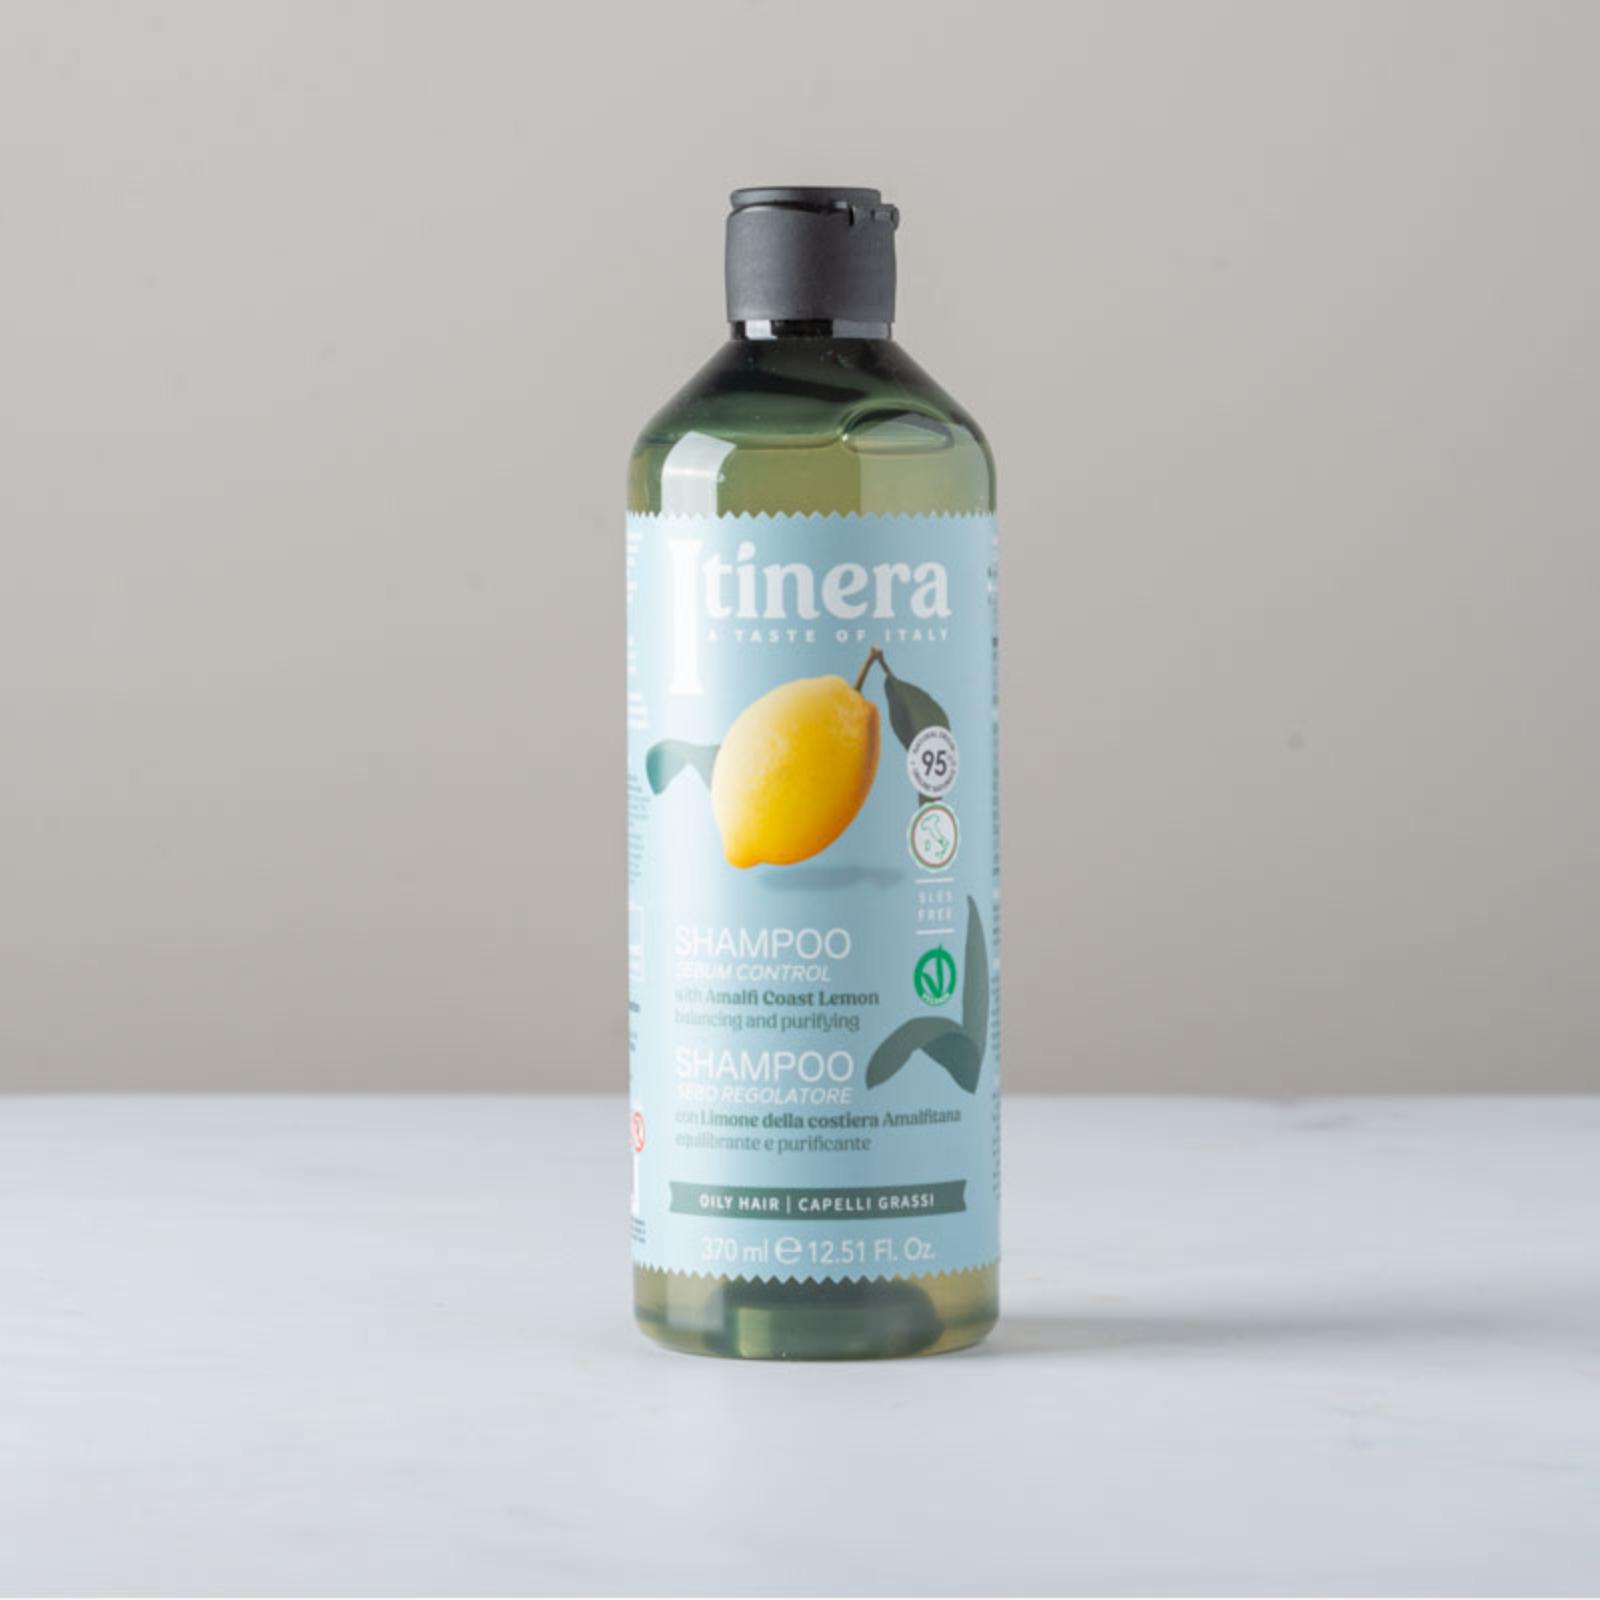 Shampoo sebo regolatore con limone della costiera amalfitana